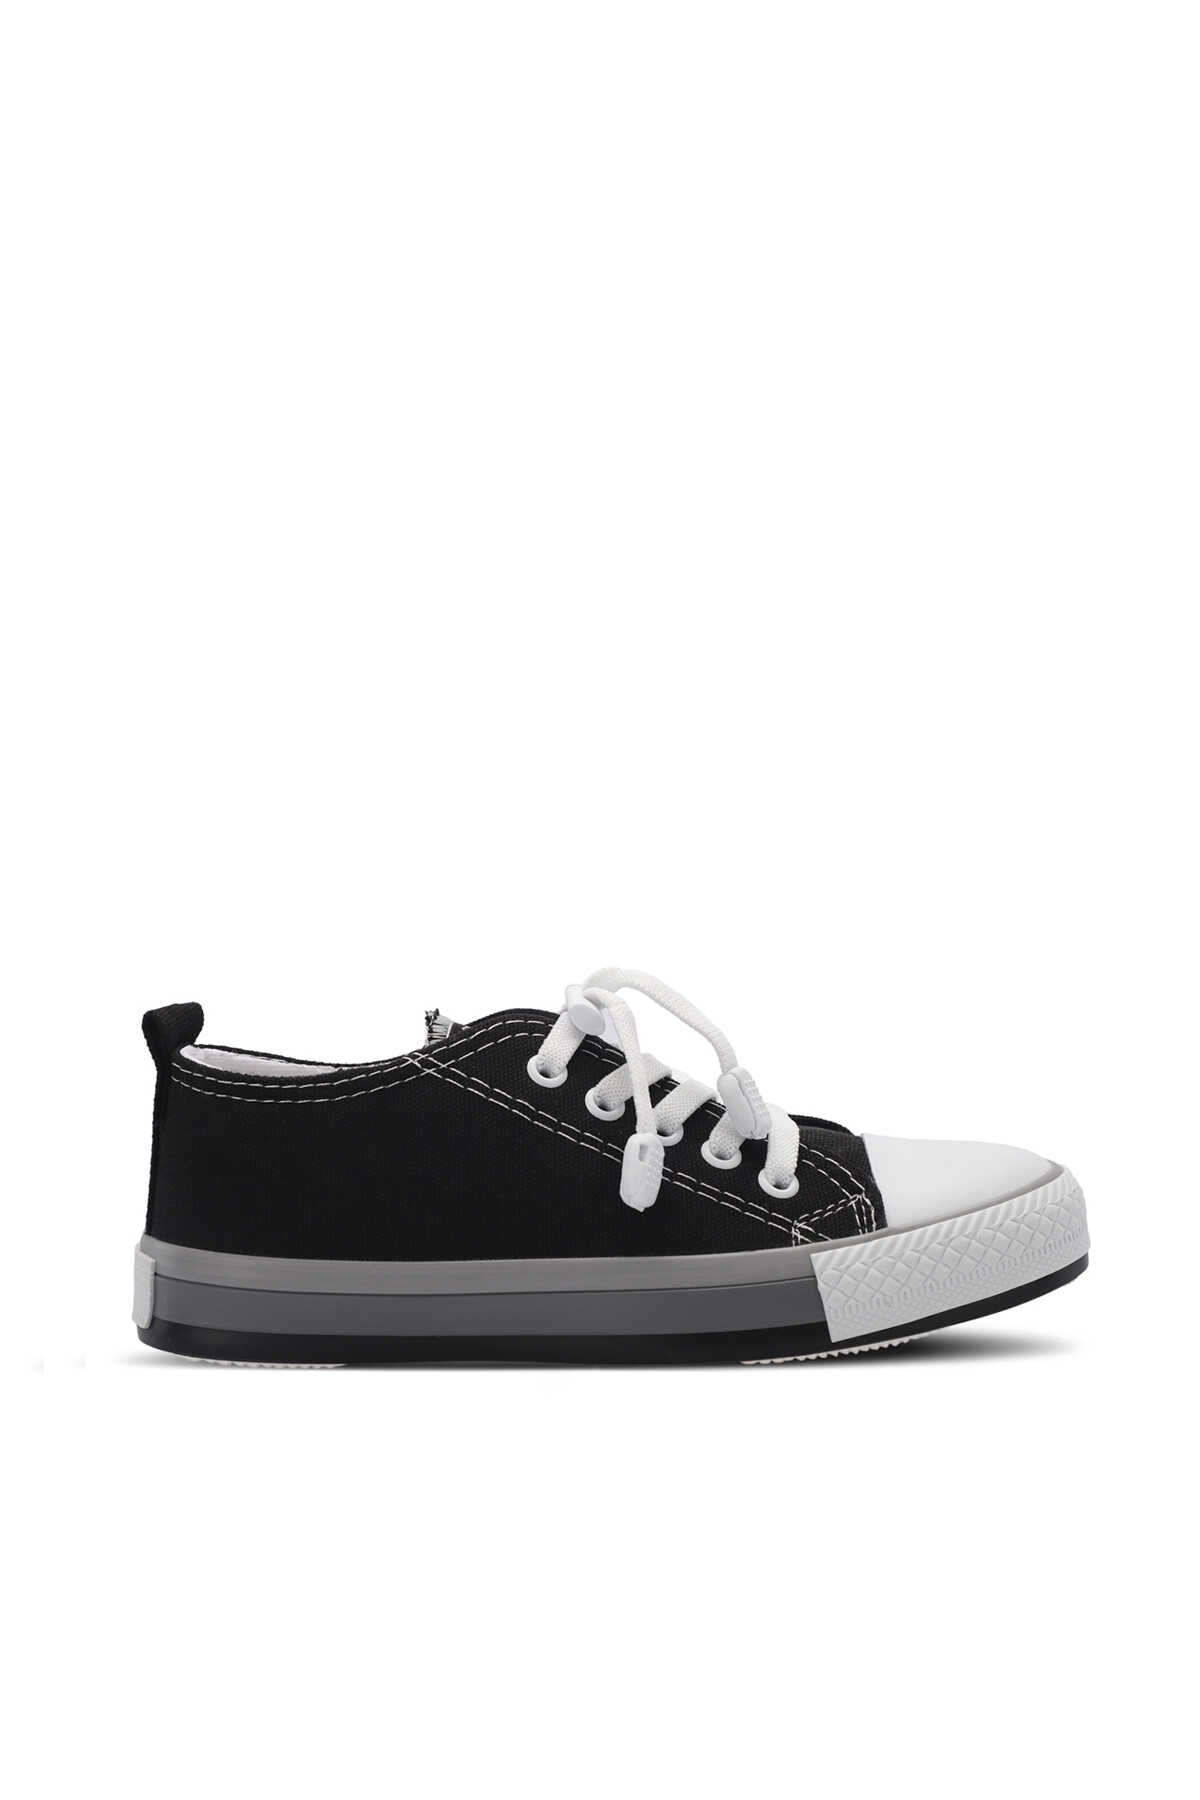 Slazenger - Slazenger KOALA Unisex Çocuk Sneaker Ayakkabı Siyah